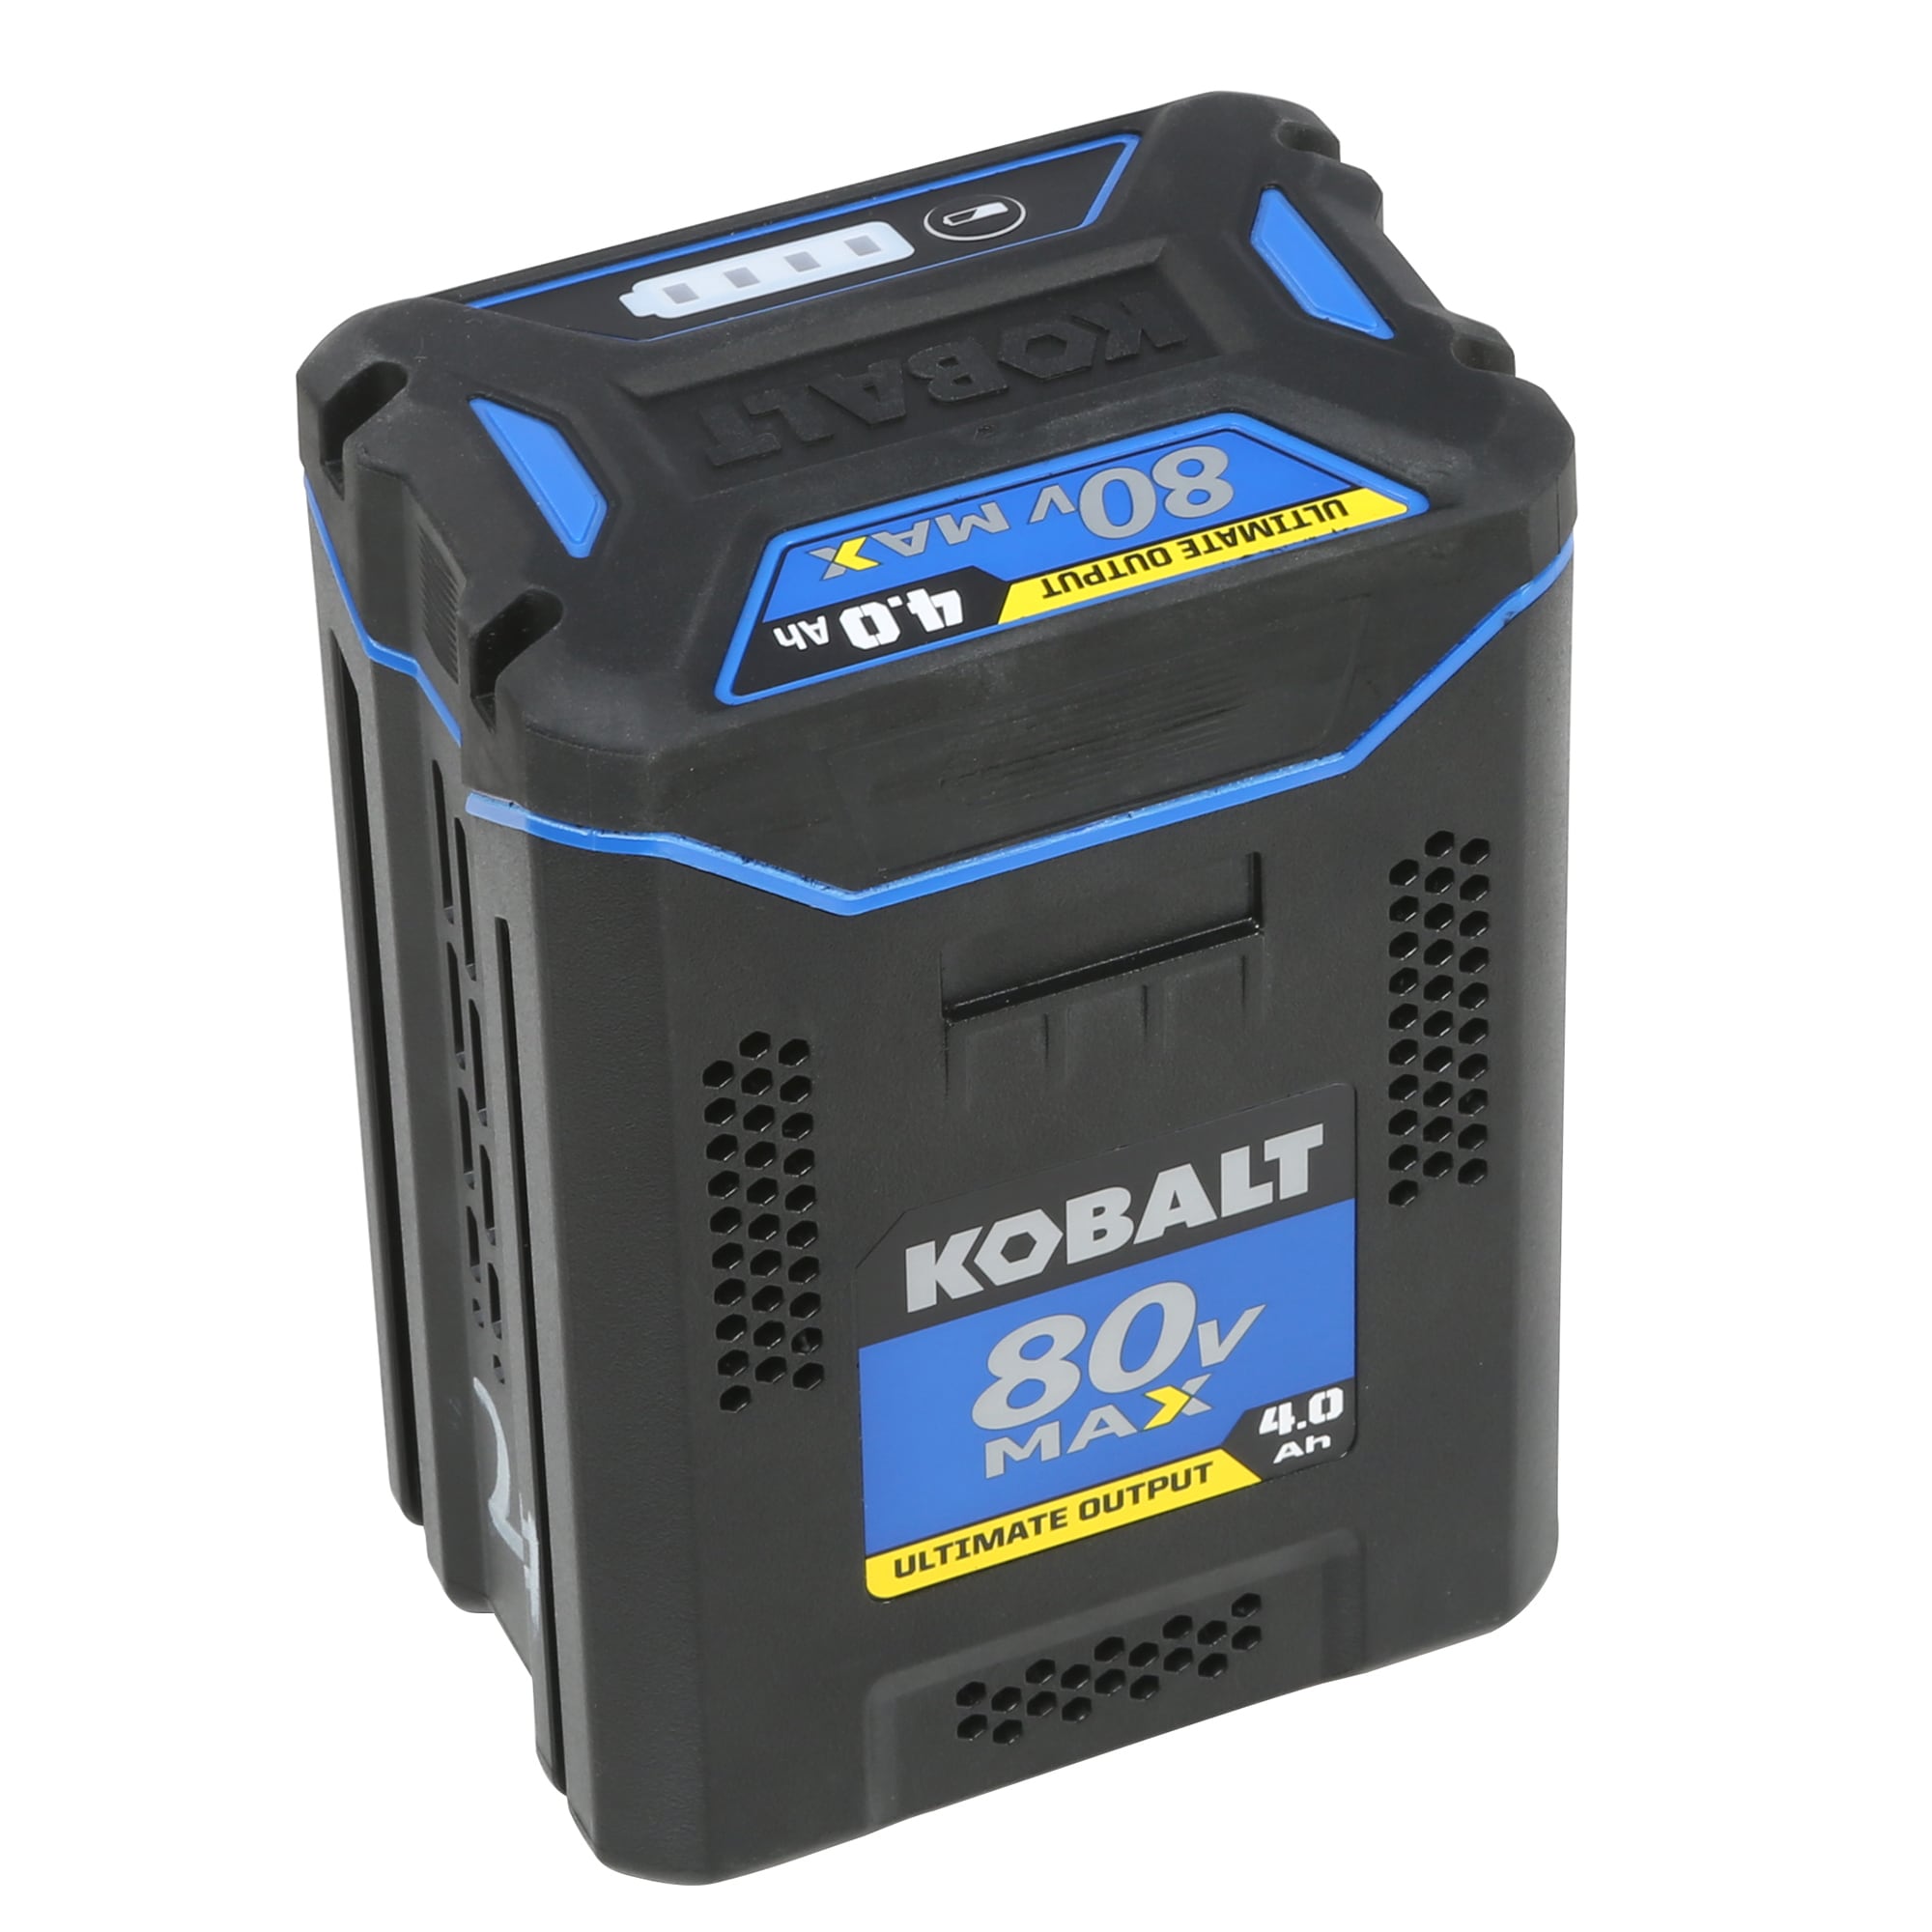 Kobalt KB 480-06